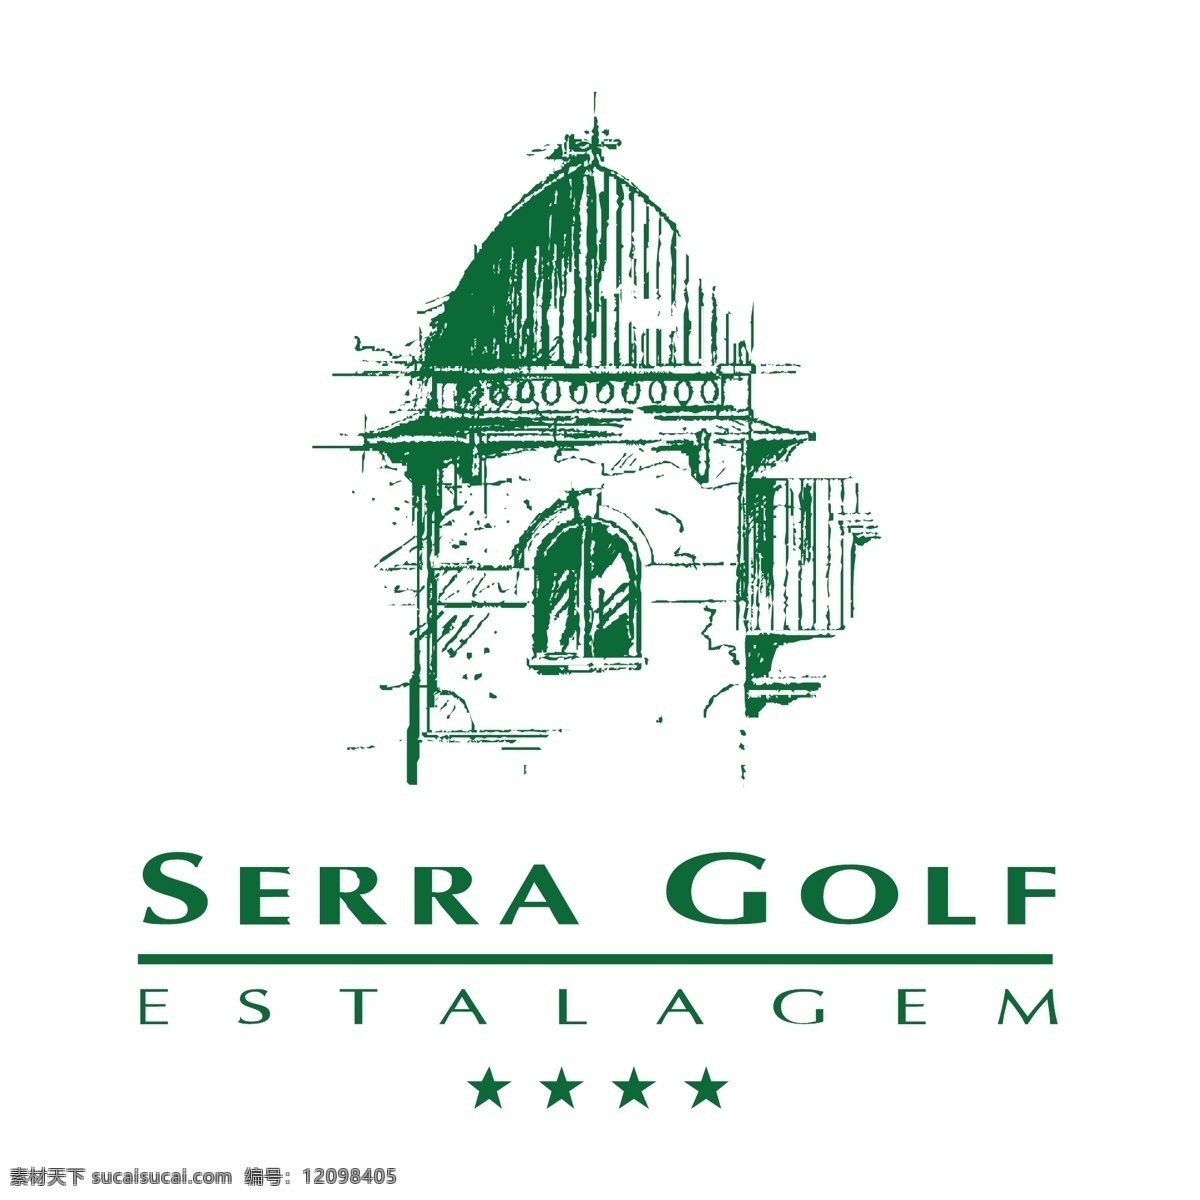 塞拉 高尔夫 标识 公司 免费 品牌 品牌标识 商标 矢量标志下载 免费矢量标识 矢量 psd源文件 logo设计